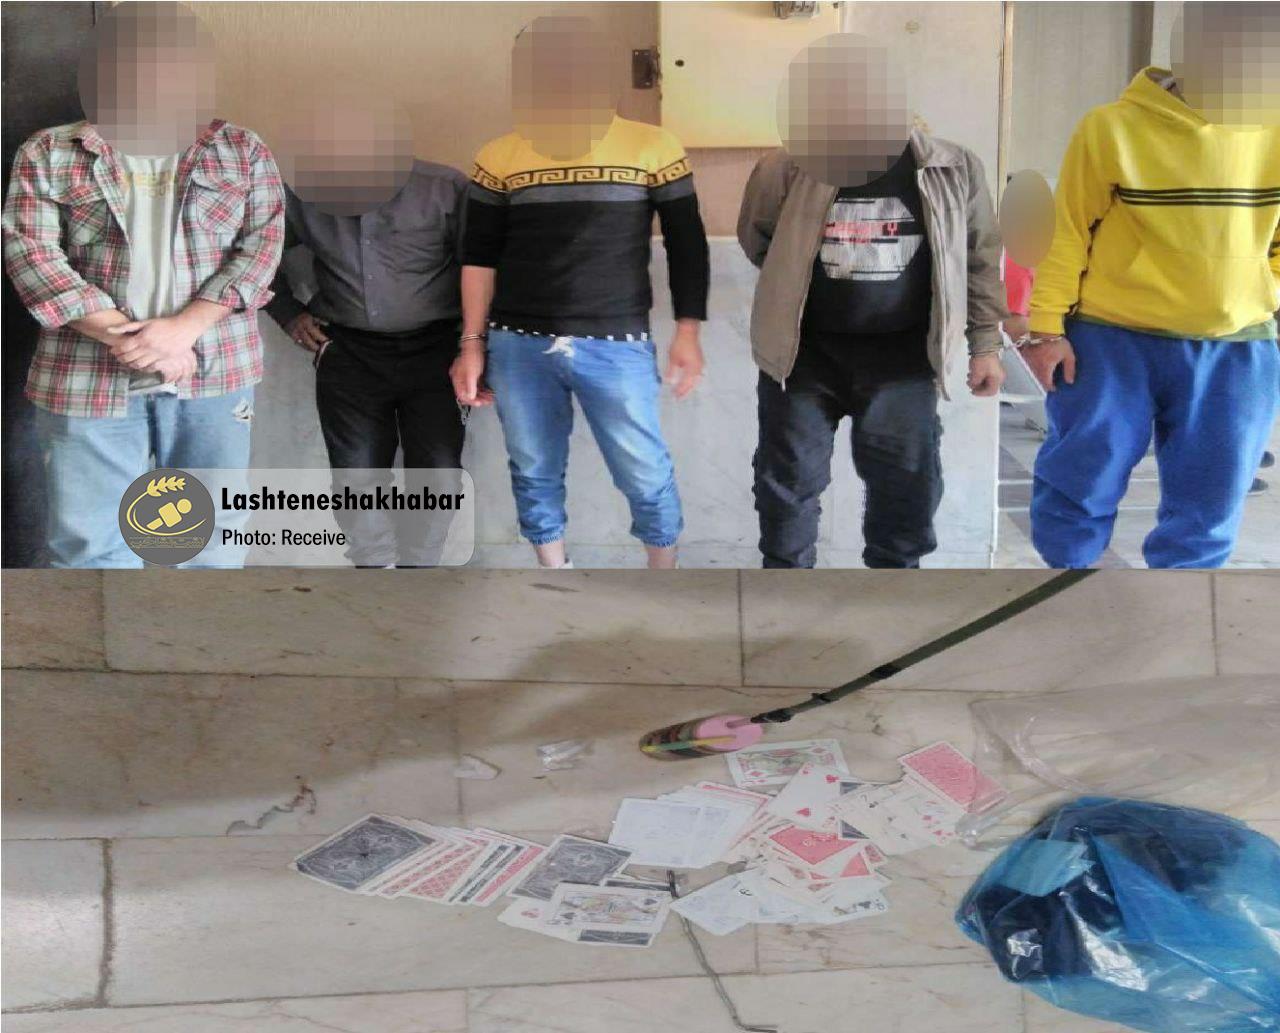 پاتک پلیس به محل قماربازی و استعمال مواد مخدر در لشت‌ نشا